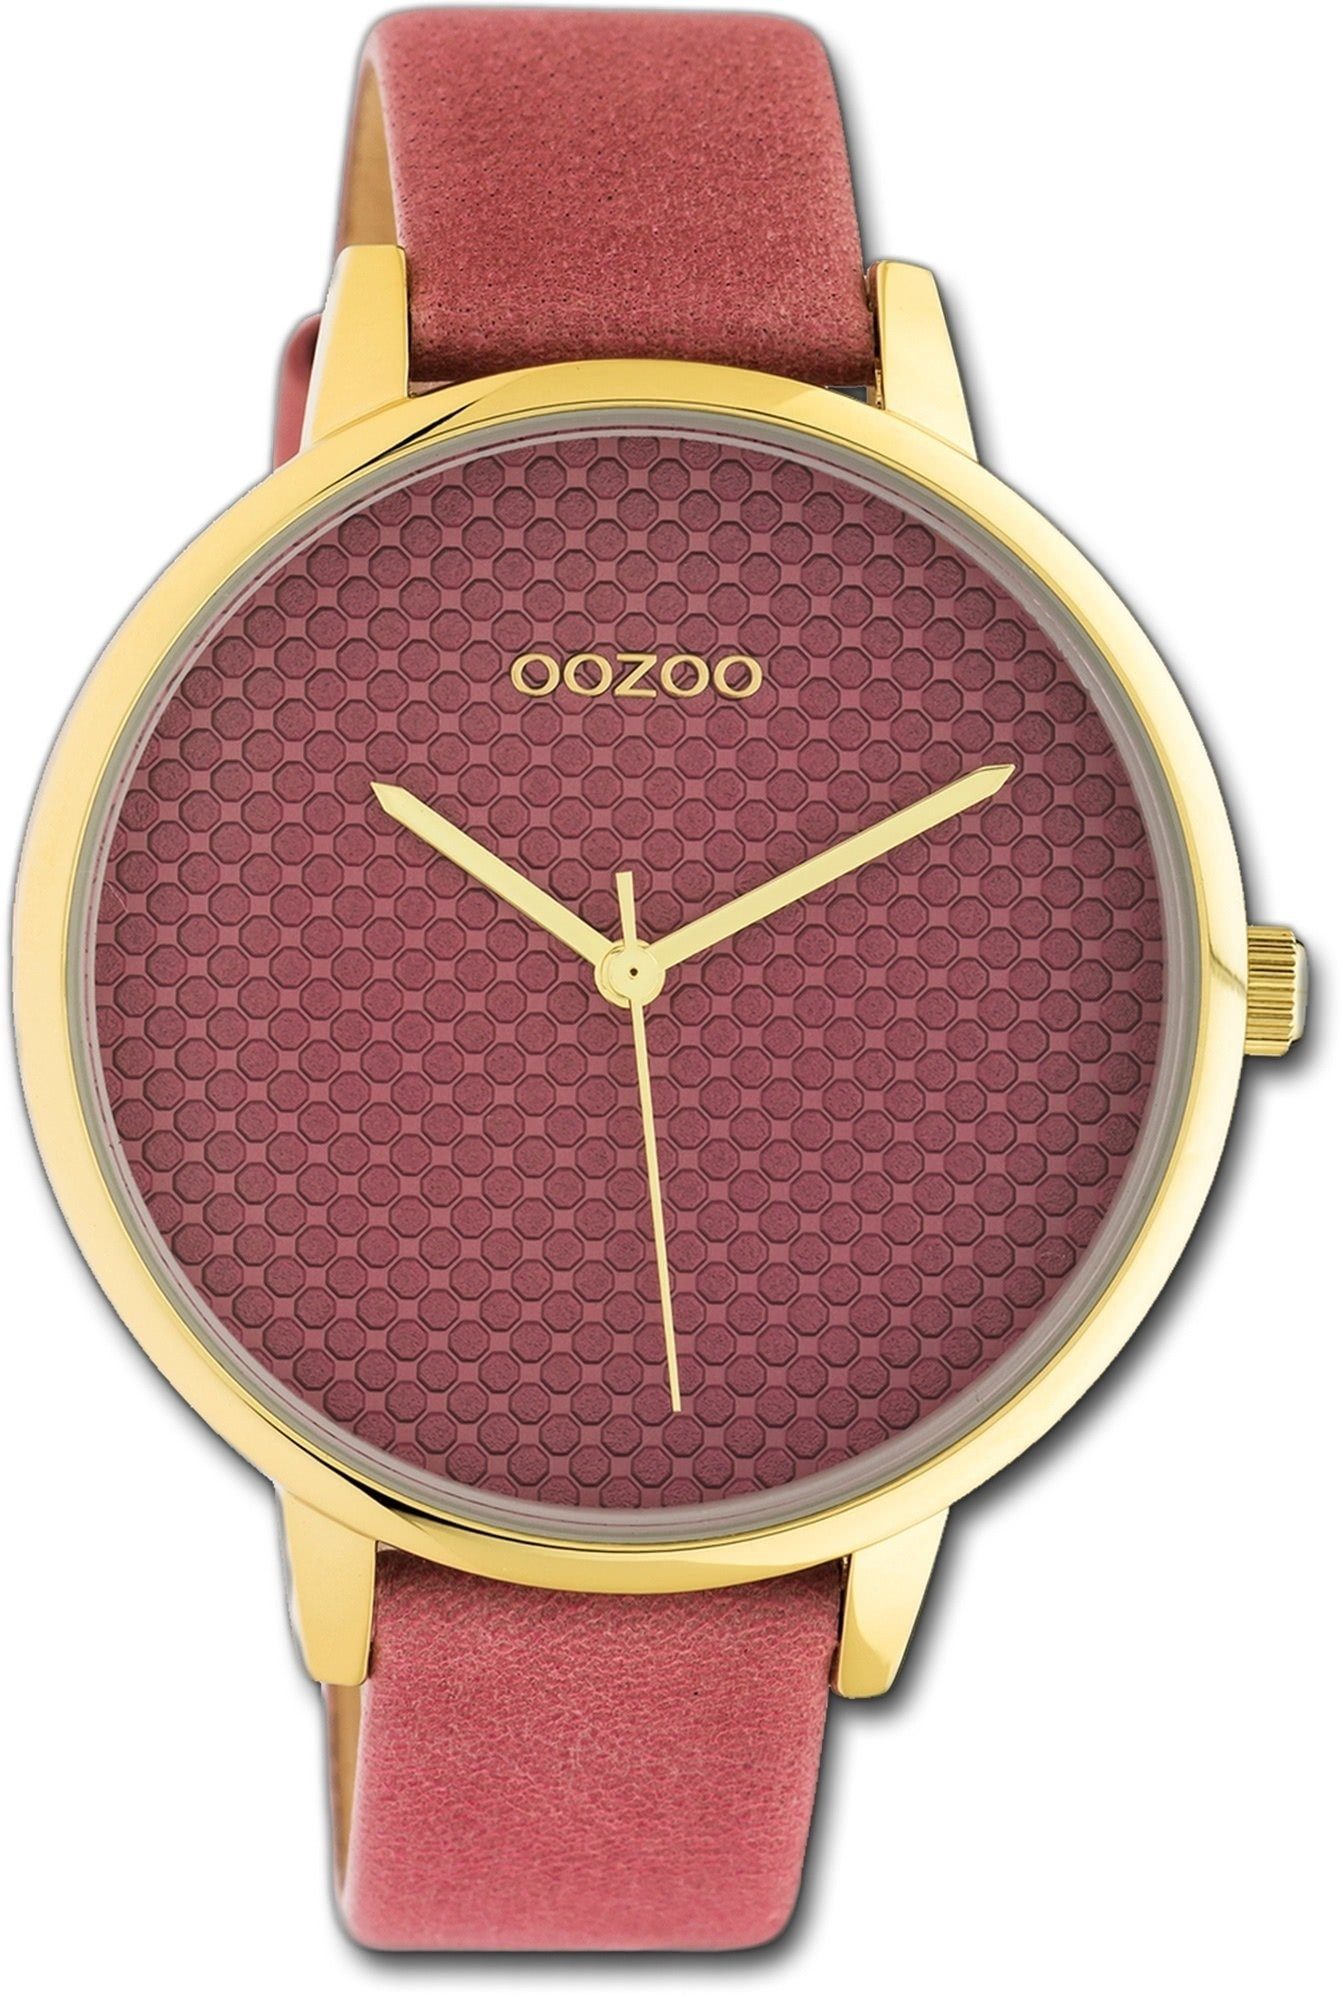 OOZOO Quarzuhr Oozoo Leder Damen Uhr C10591 Analog, Damenuhr Lederarmband rosa, rundes Gehäuse, groß (ca. 42mm)